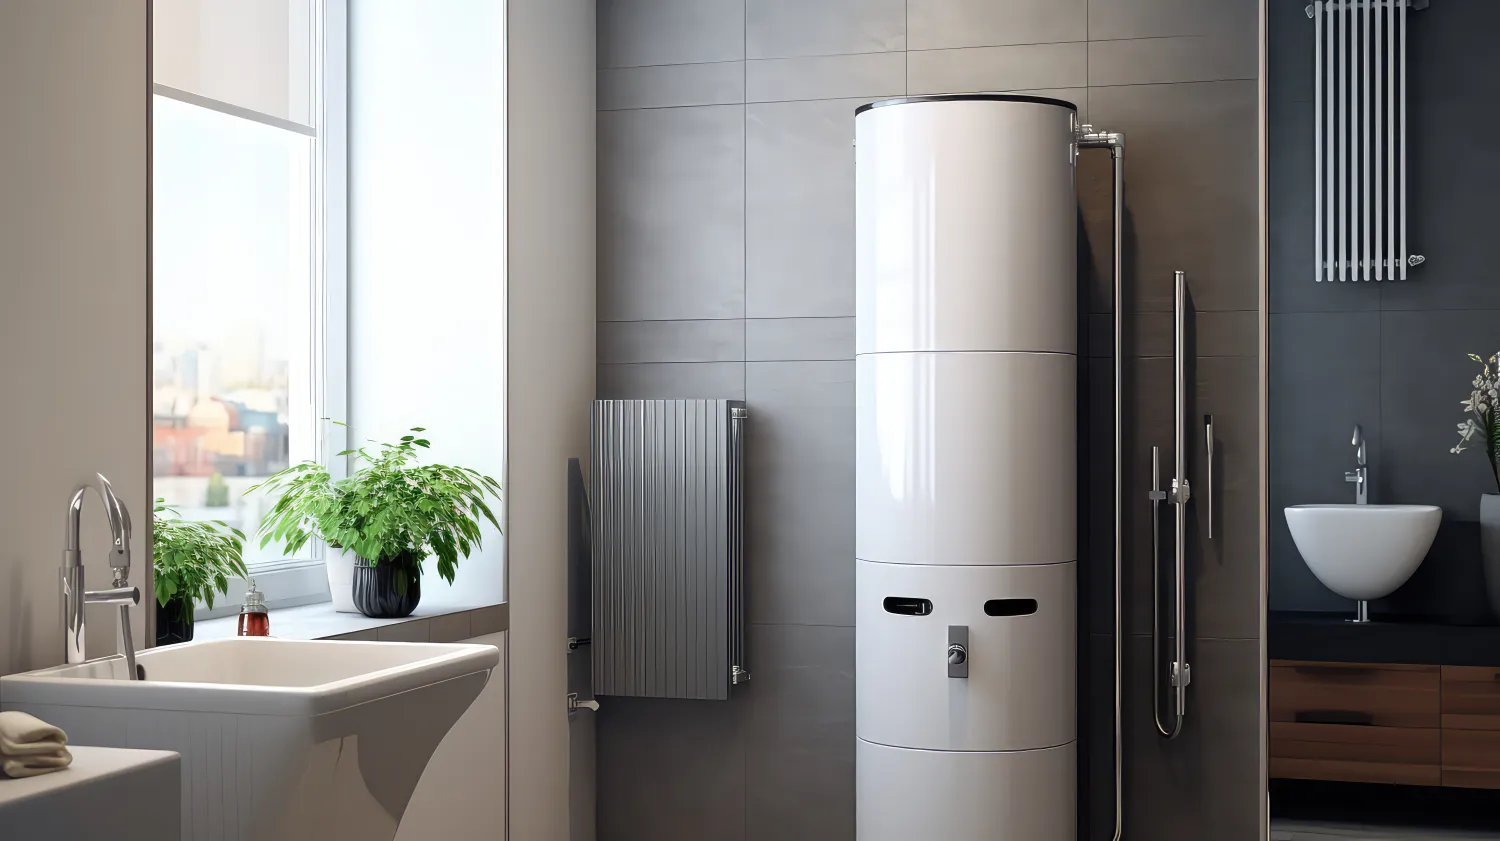 Chauffe eau thermodynamique installé dans une salle de bain